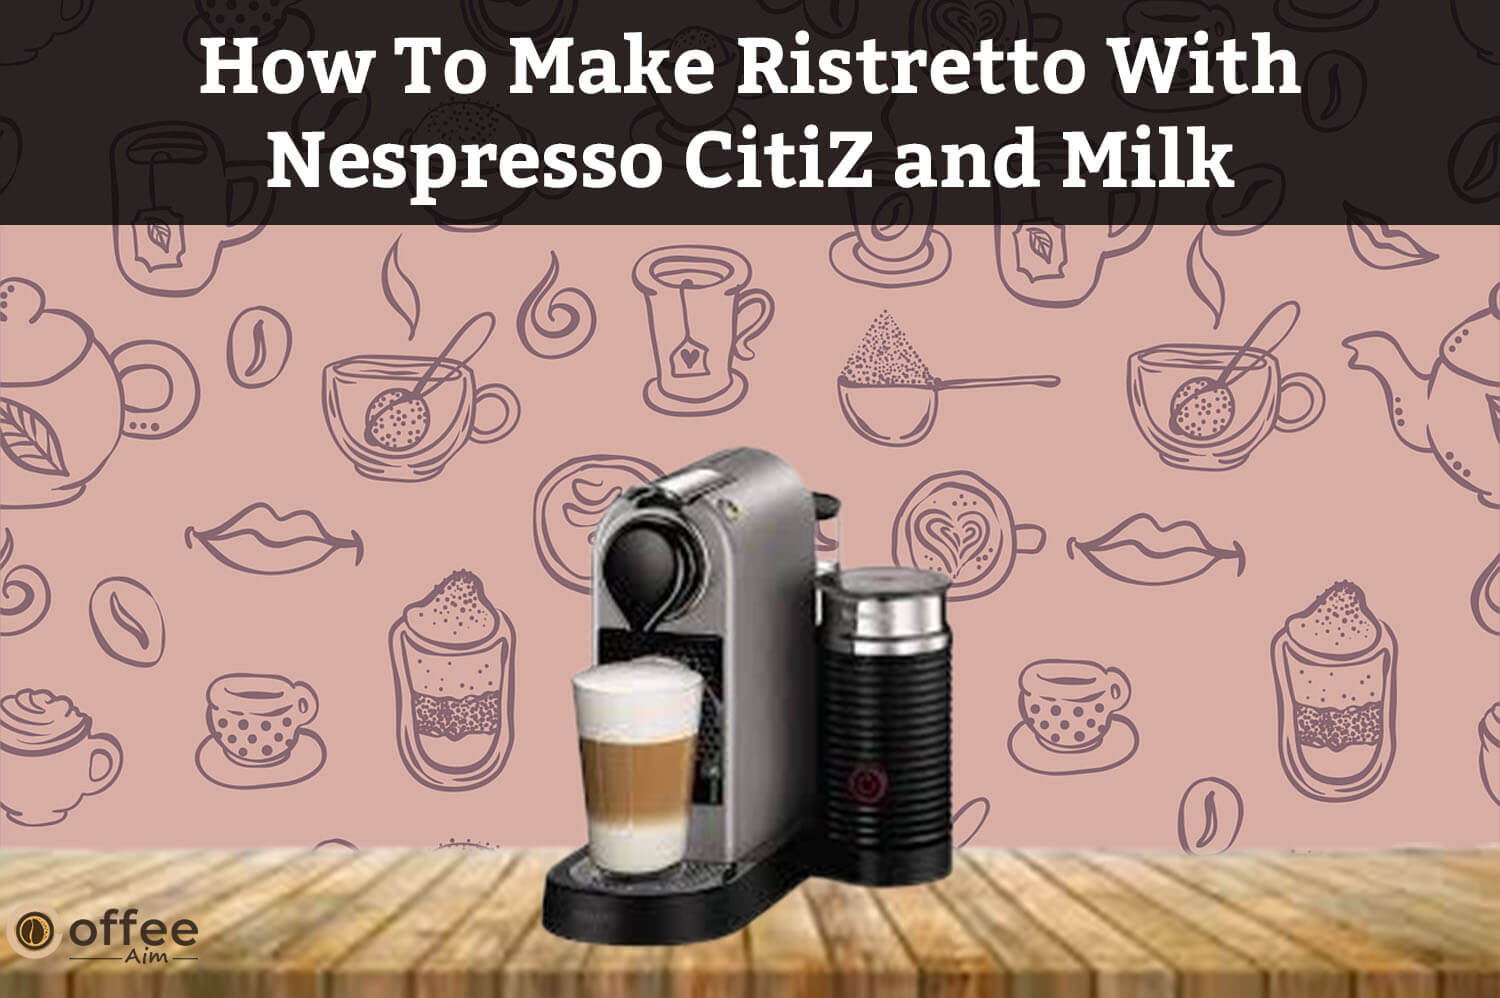 Make Ristretto With CitiZ and Milk